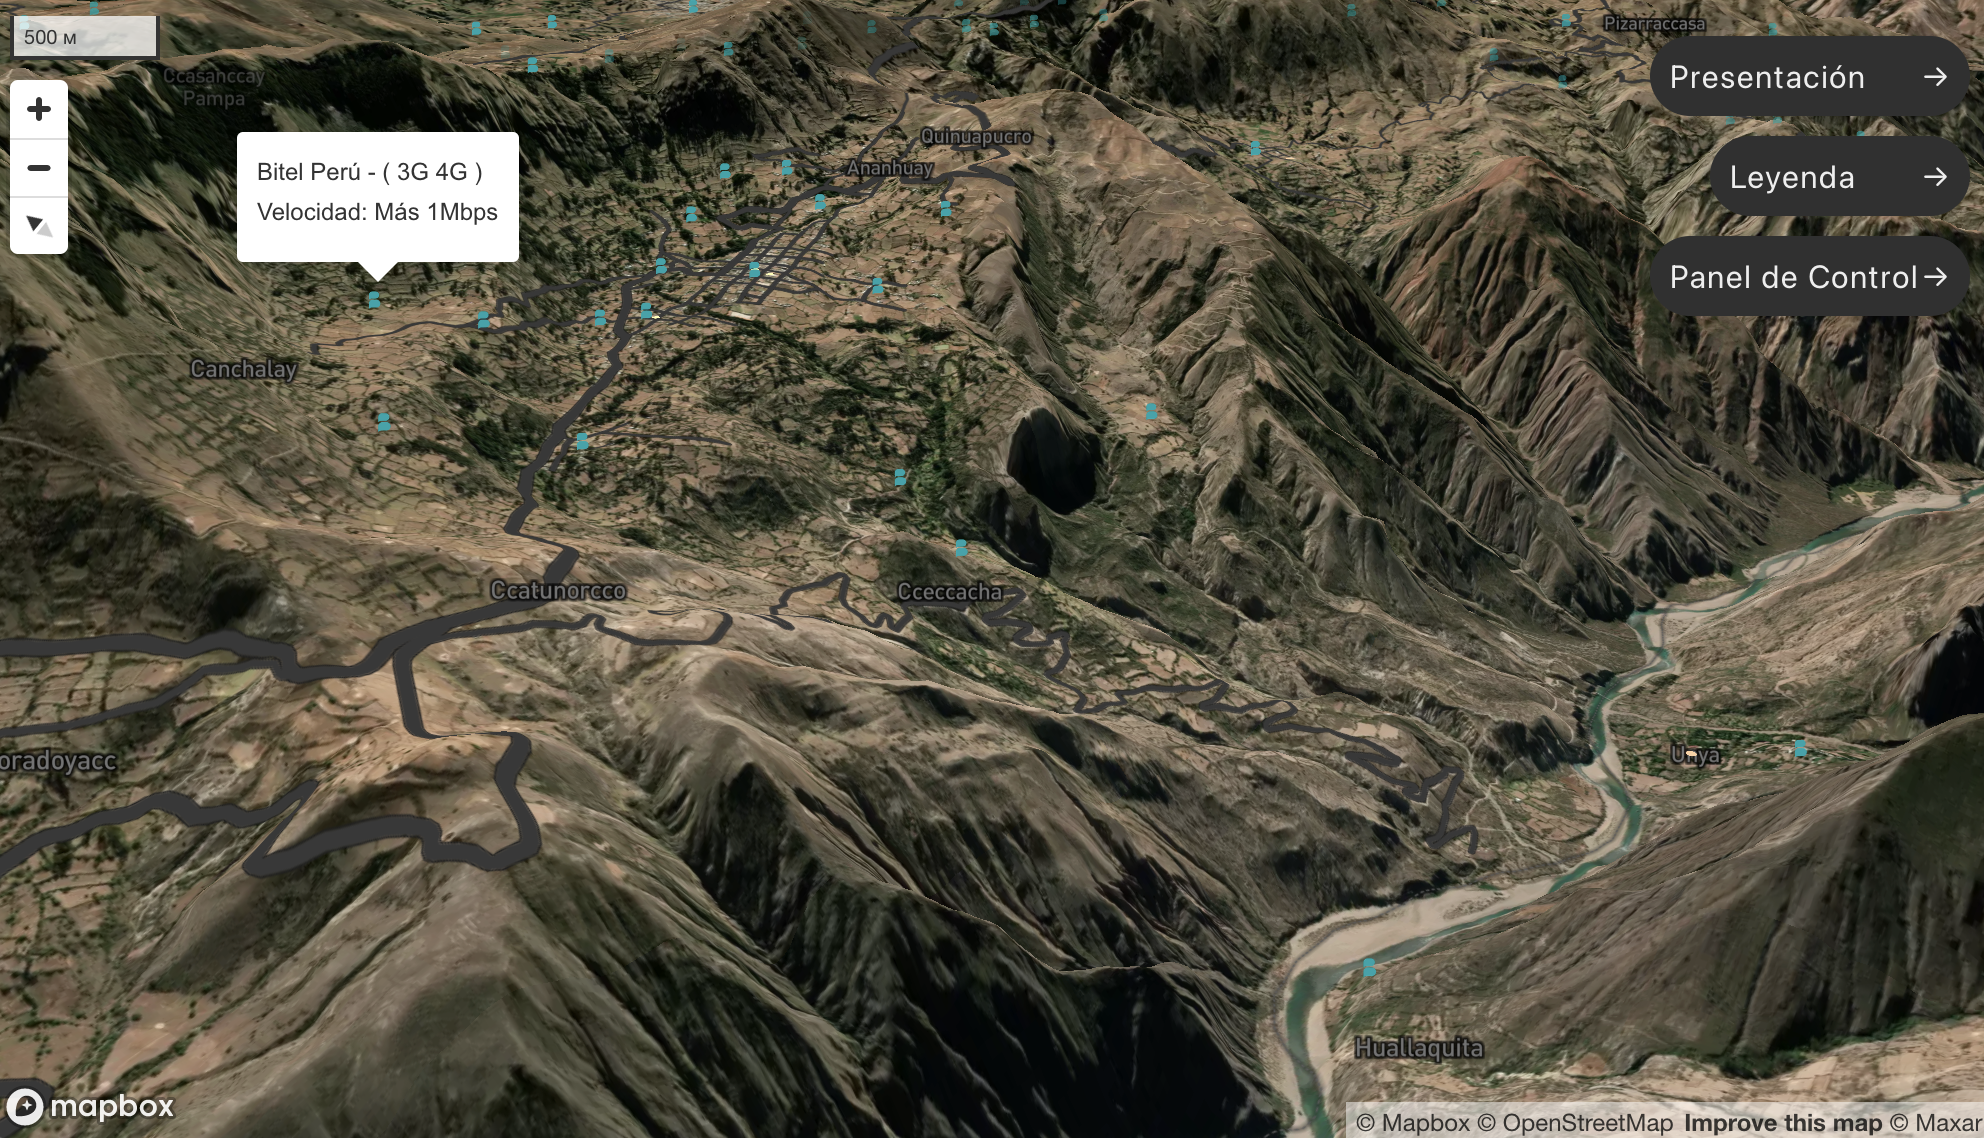 Карта расположения сотовых вышех к Аякучо, Перу